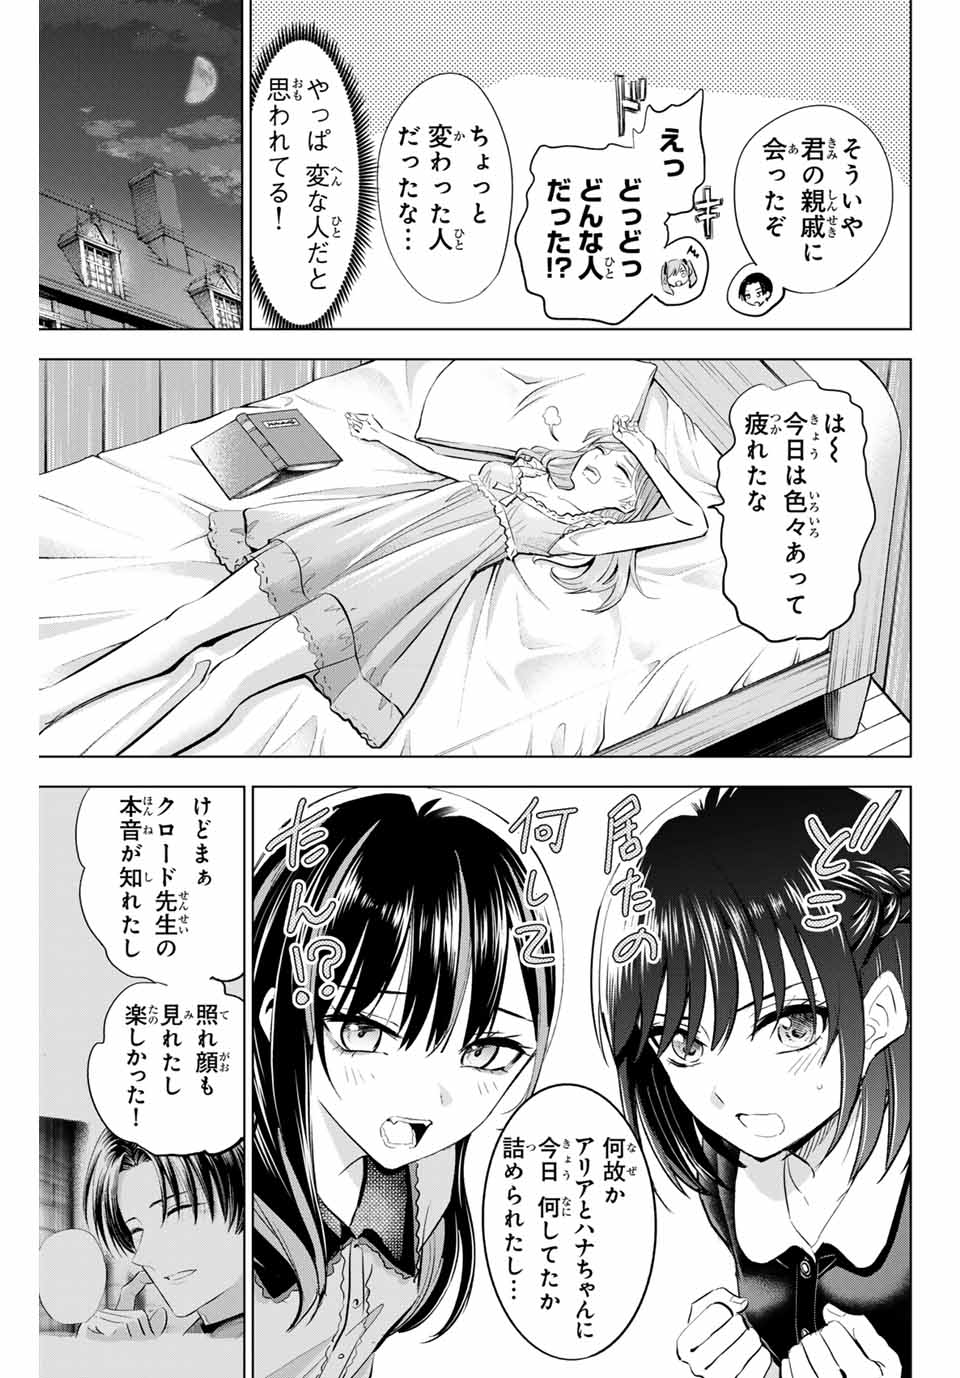 Kuroneko to Majo no Kyoushitsu - Chapter 60 - Page 19